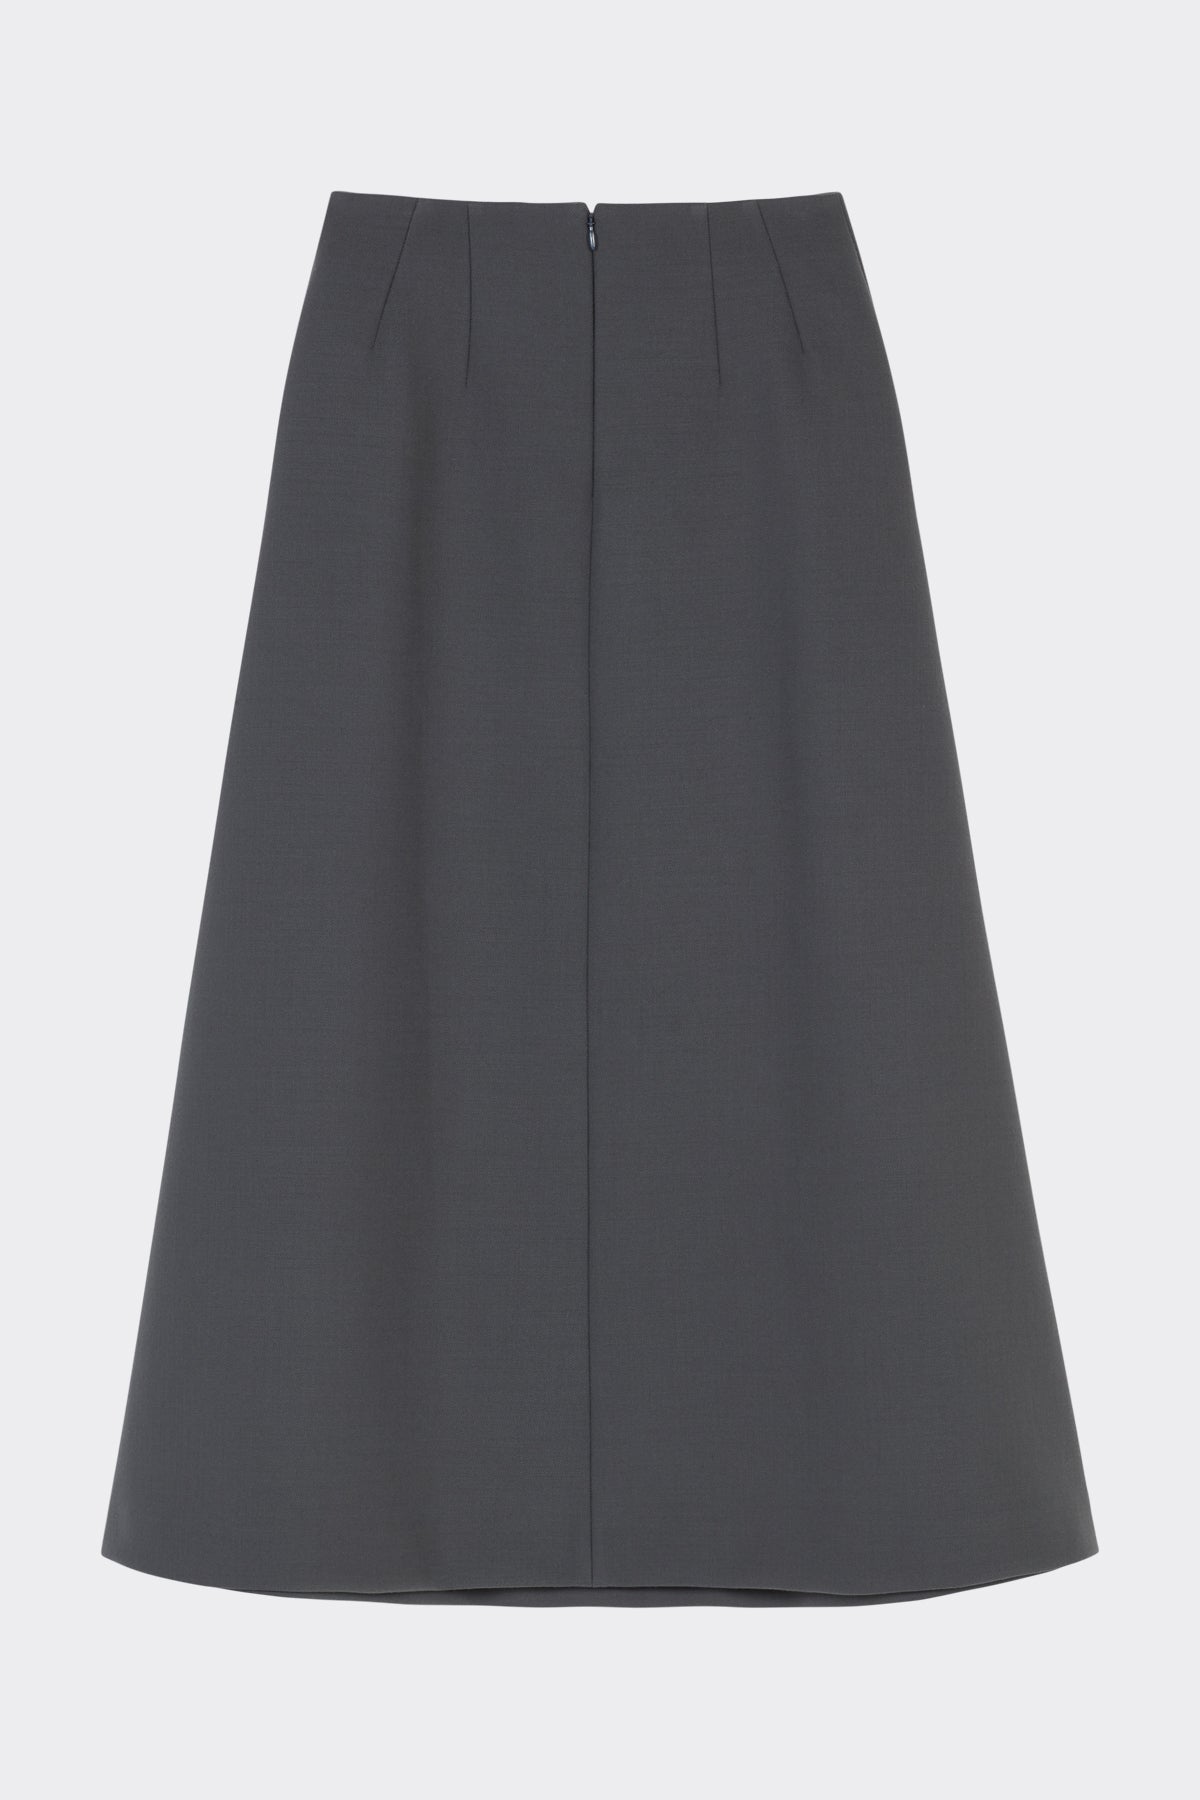 Hugette Skirt in Charcoal Grey| Noon by Noor